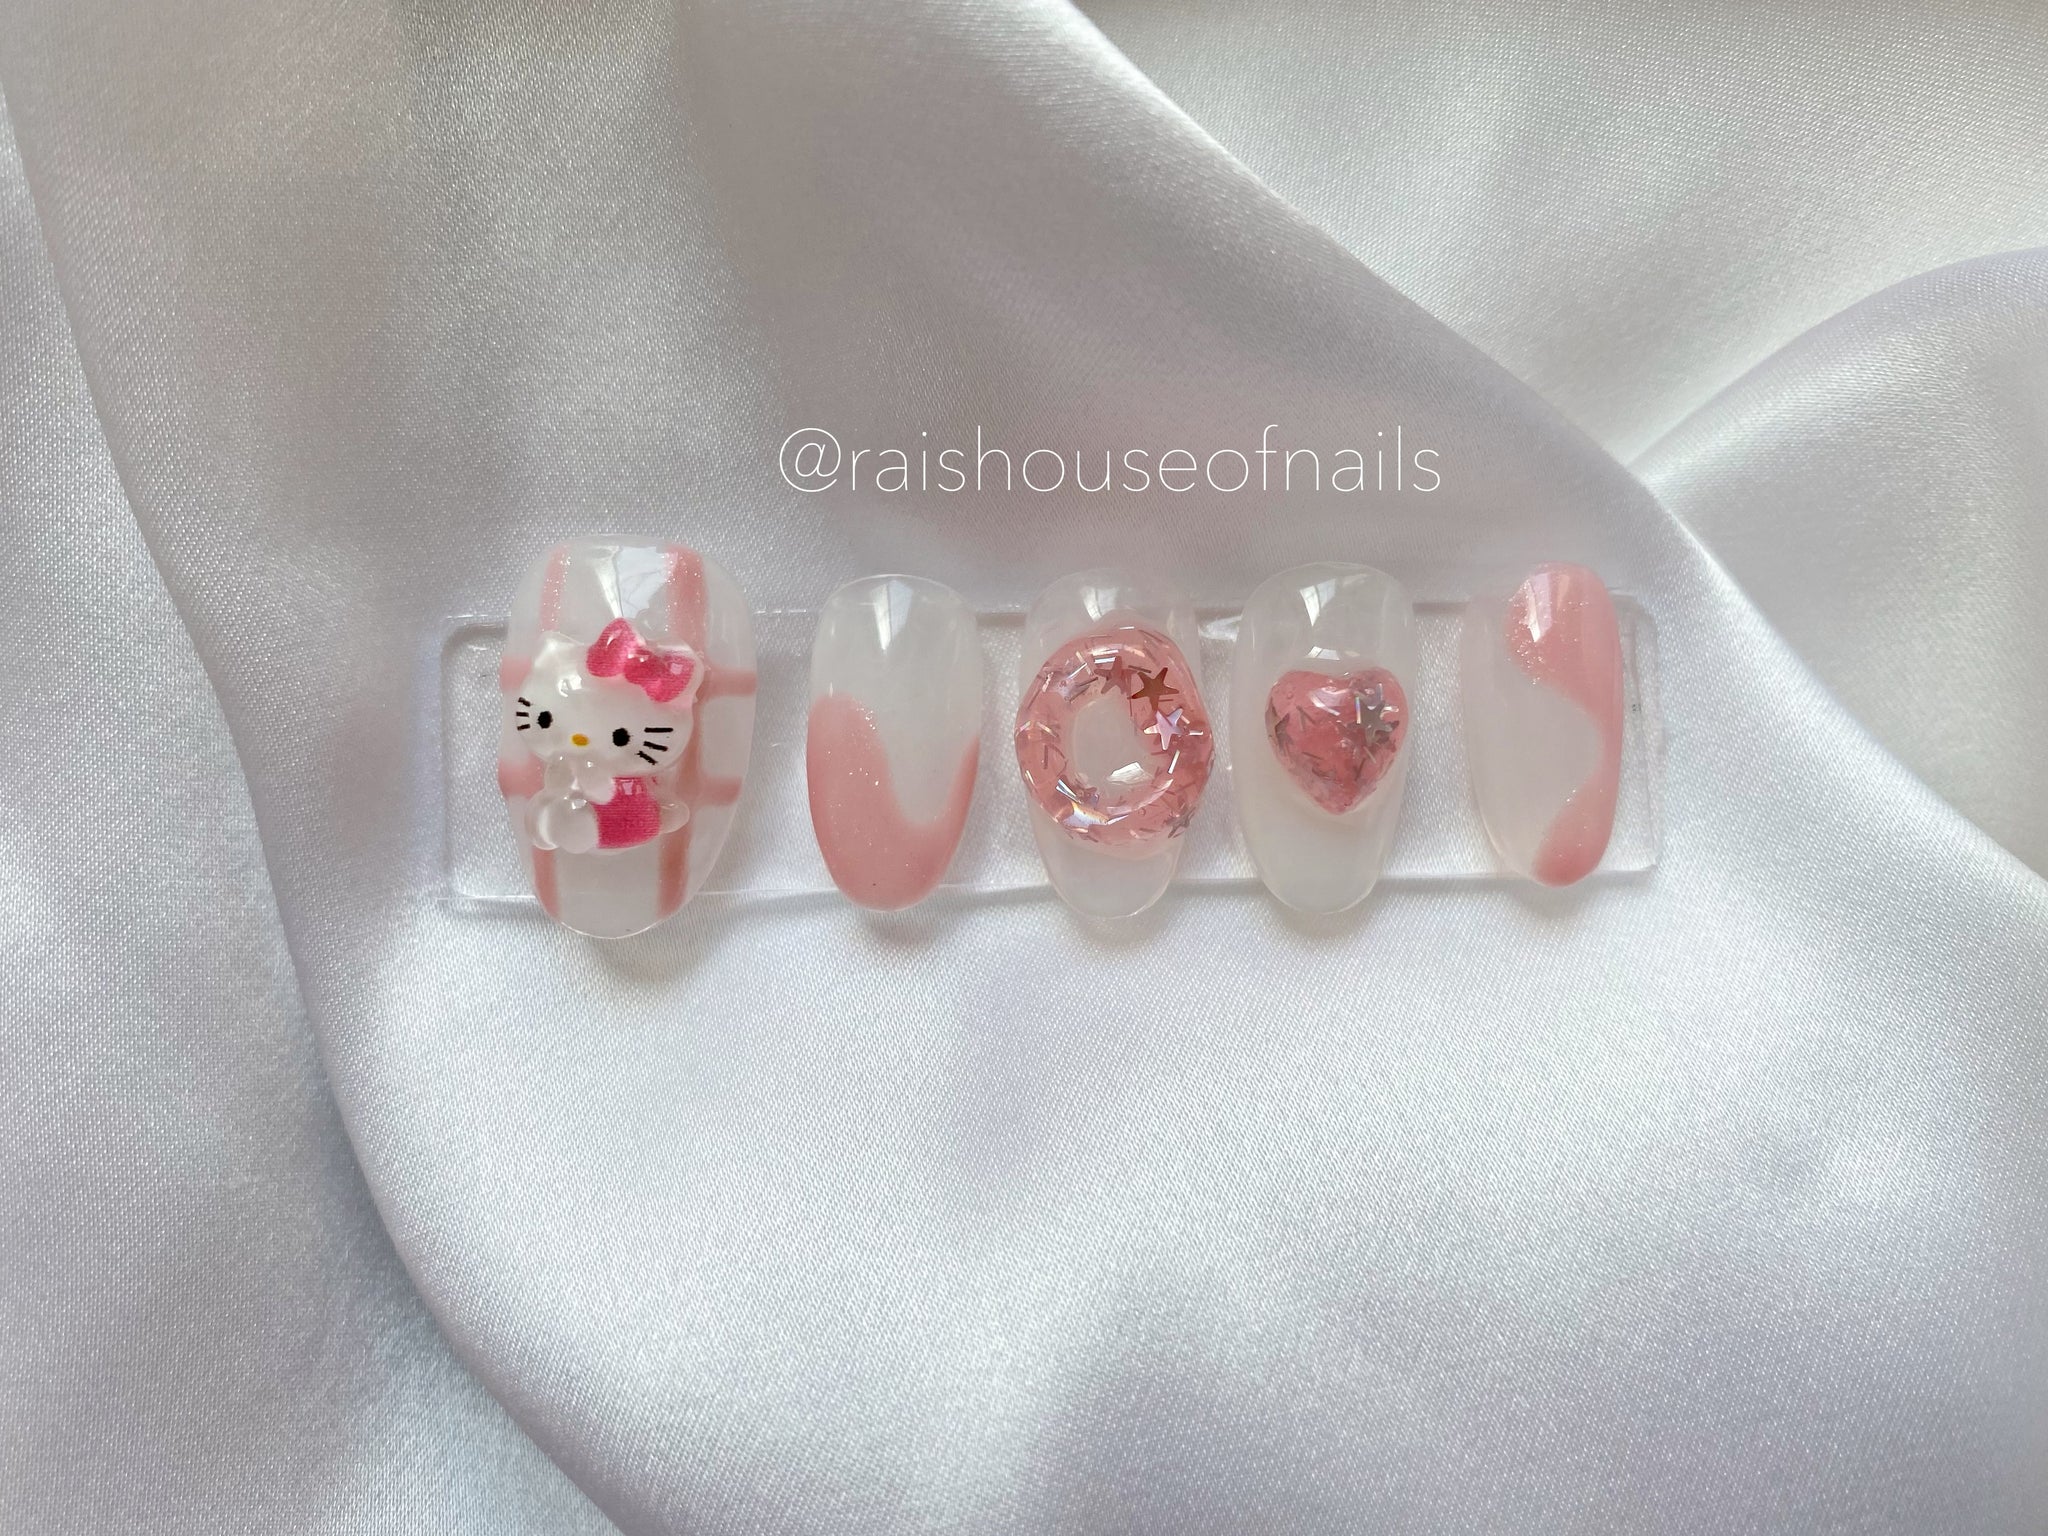 Pink & White Hello Kitty Louis Vuitton Press On Nails - Nail